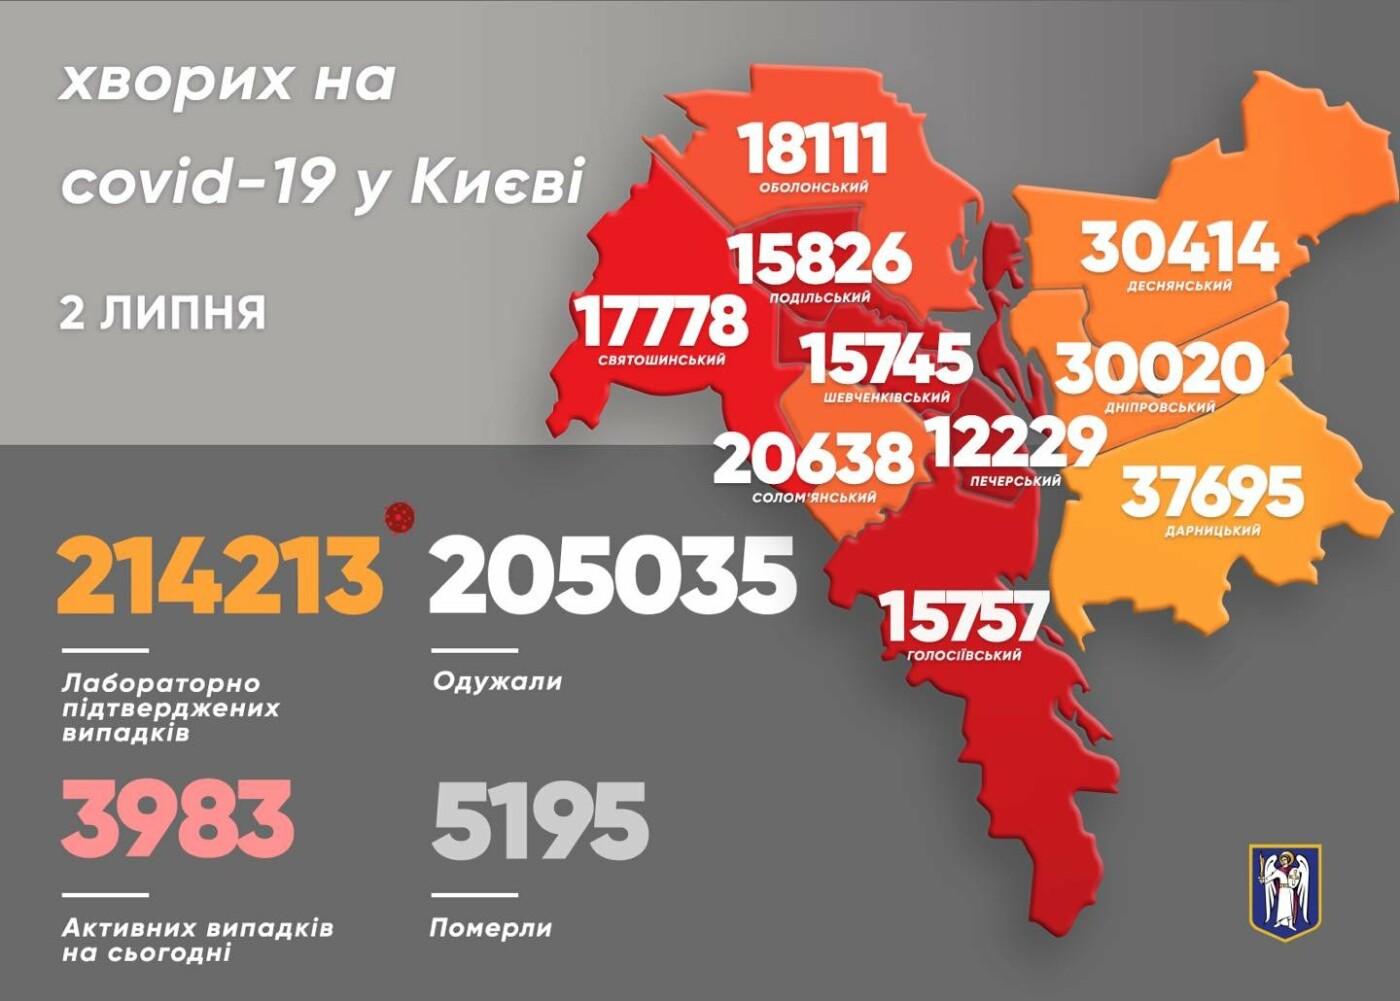 Коронавирус в Киеве: появилась статистика COVID-19 по районам на 2 июля